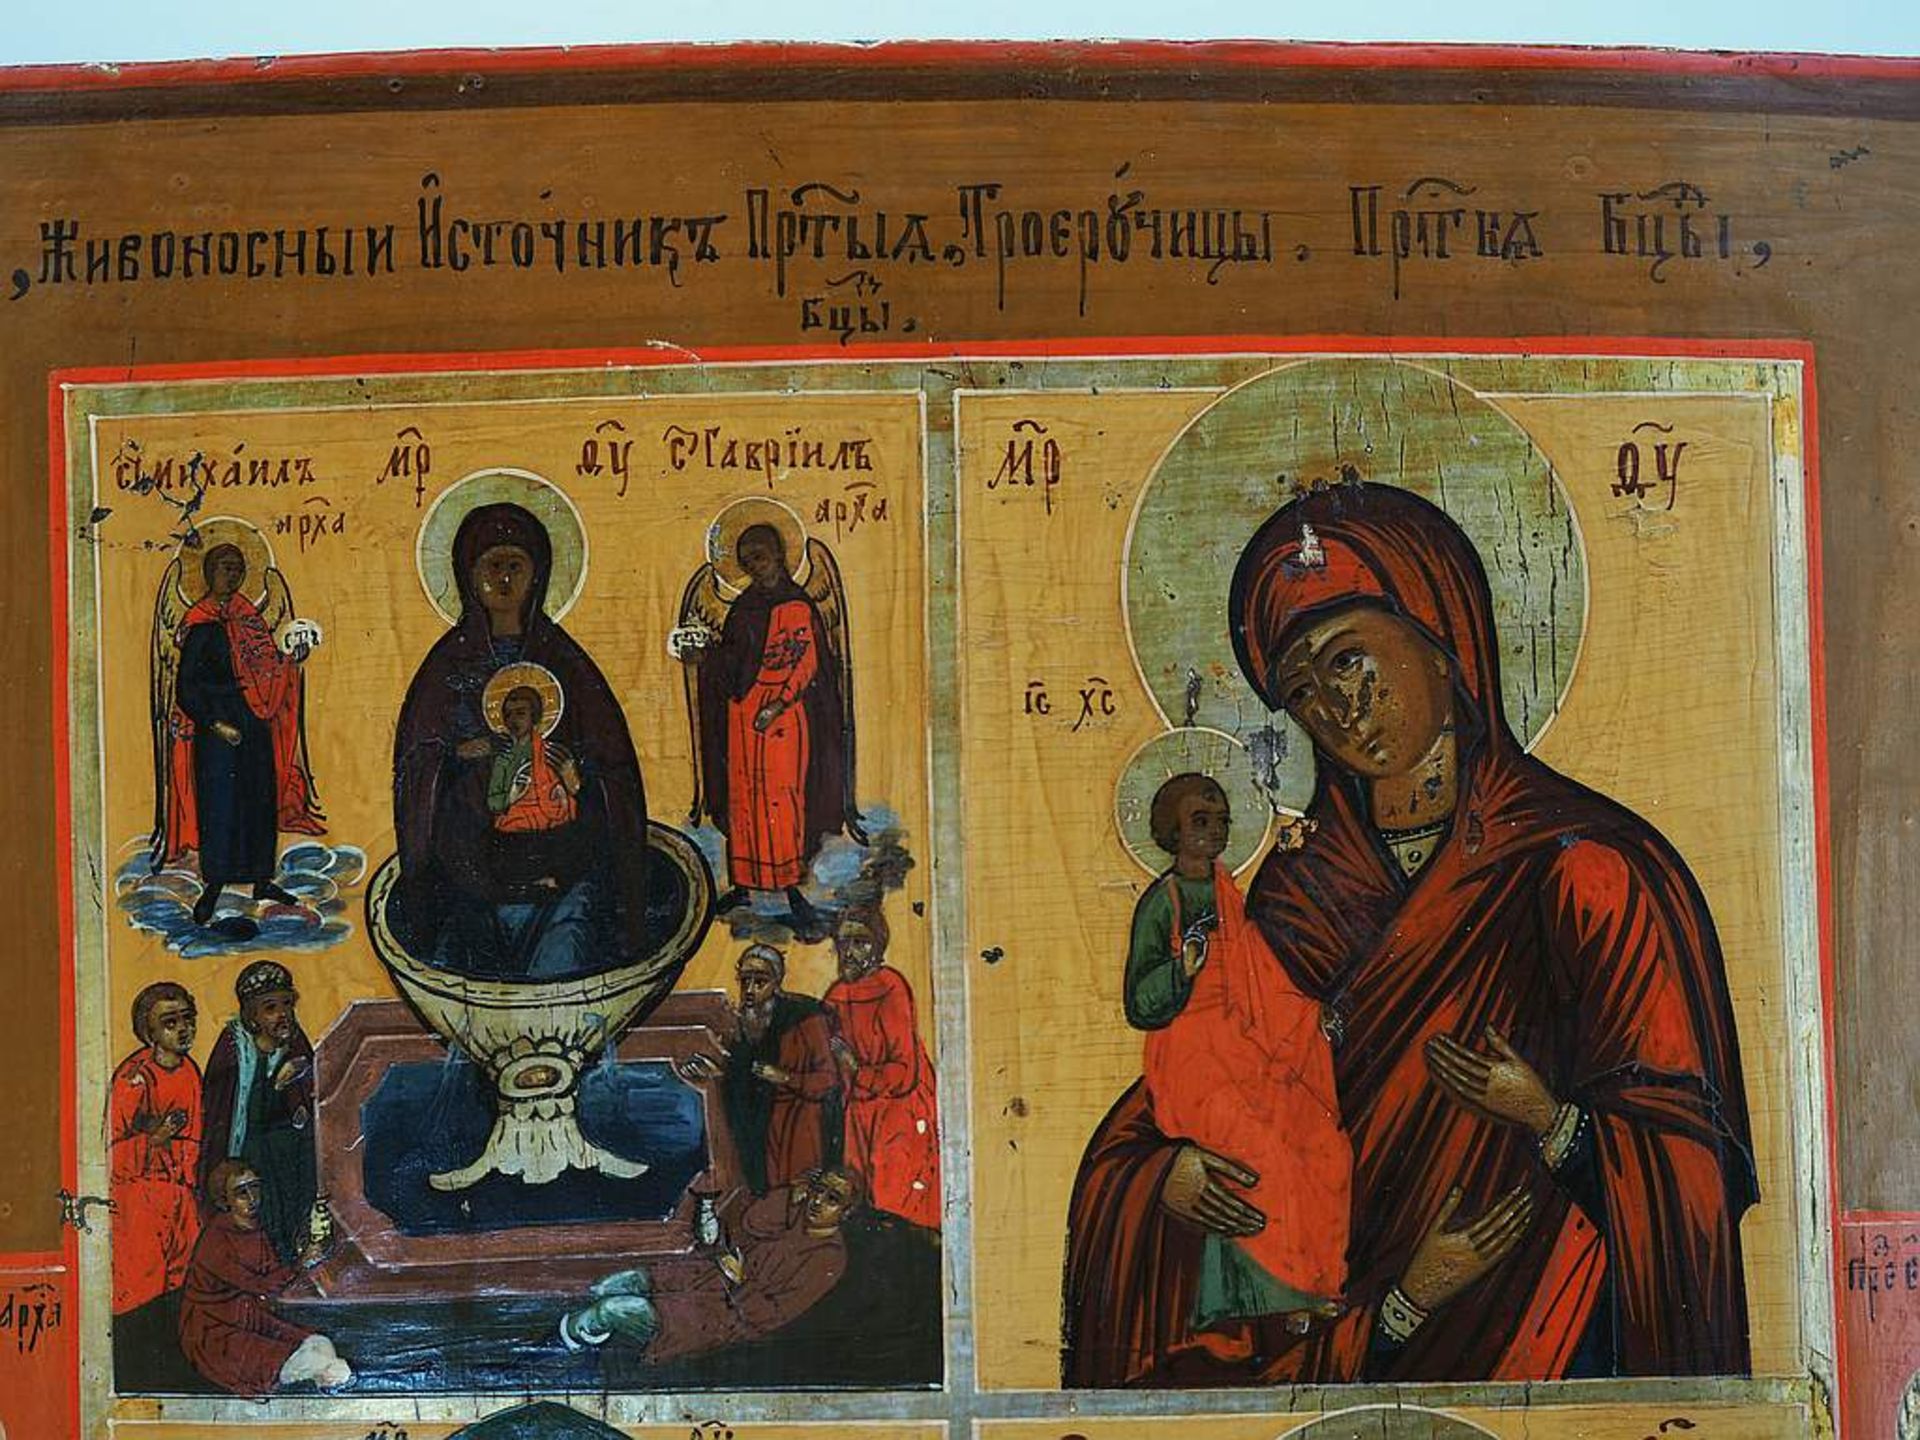 Russische Vierfelder-Ikone mit Gnadenbildern der Gottesmutter. - Image 4 of 6